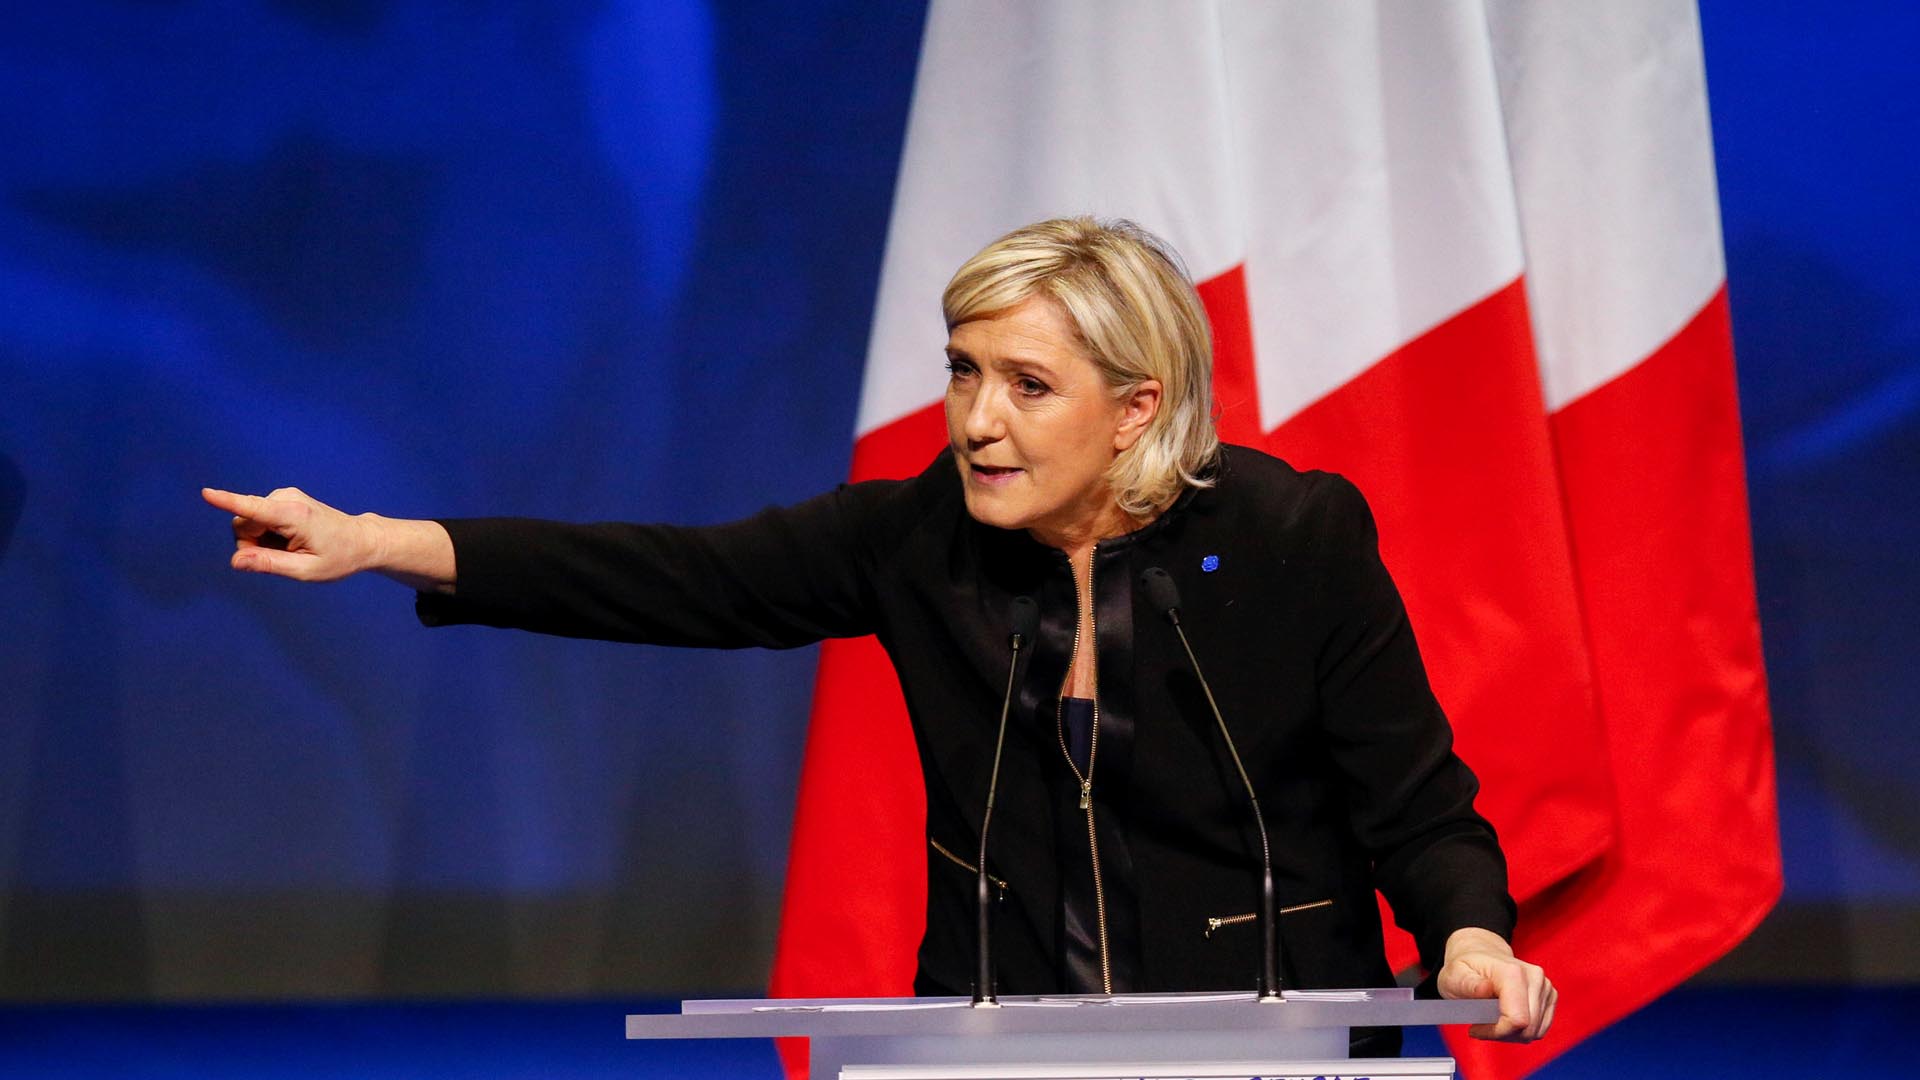 La política francesa criticó fuertemente la inmigración y la posición de la UE, asomando la posibilidad de retirarse de ella